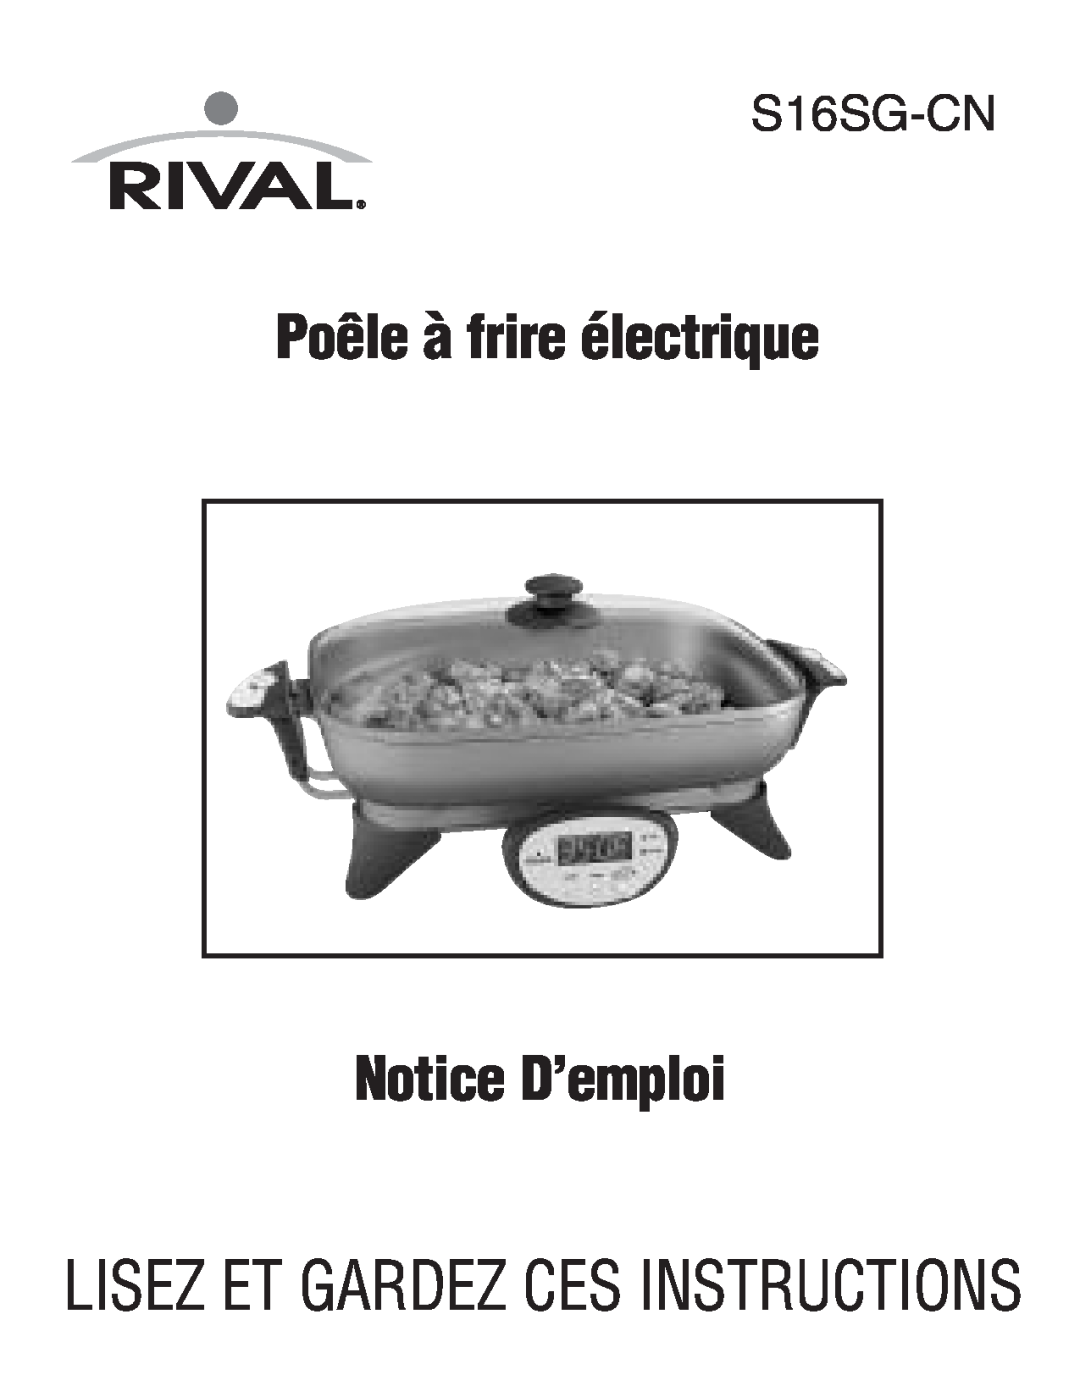 Rival S16SG-CN manual Poêle à frire électrique Notice D’emploi, Lisez Et Gardez Ces Instructions 